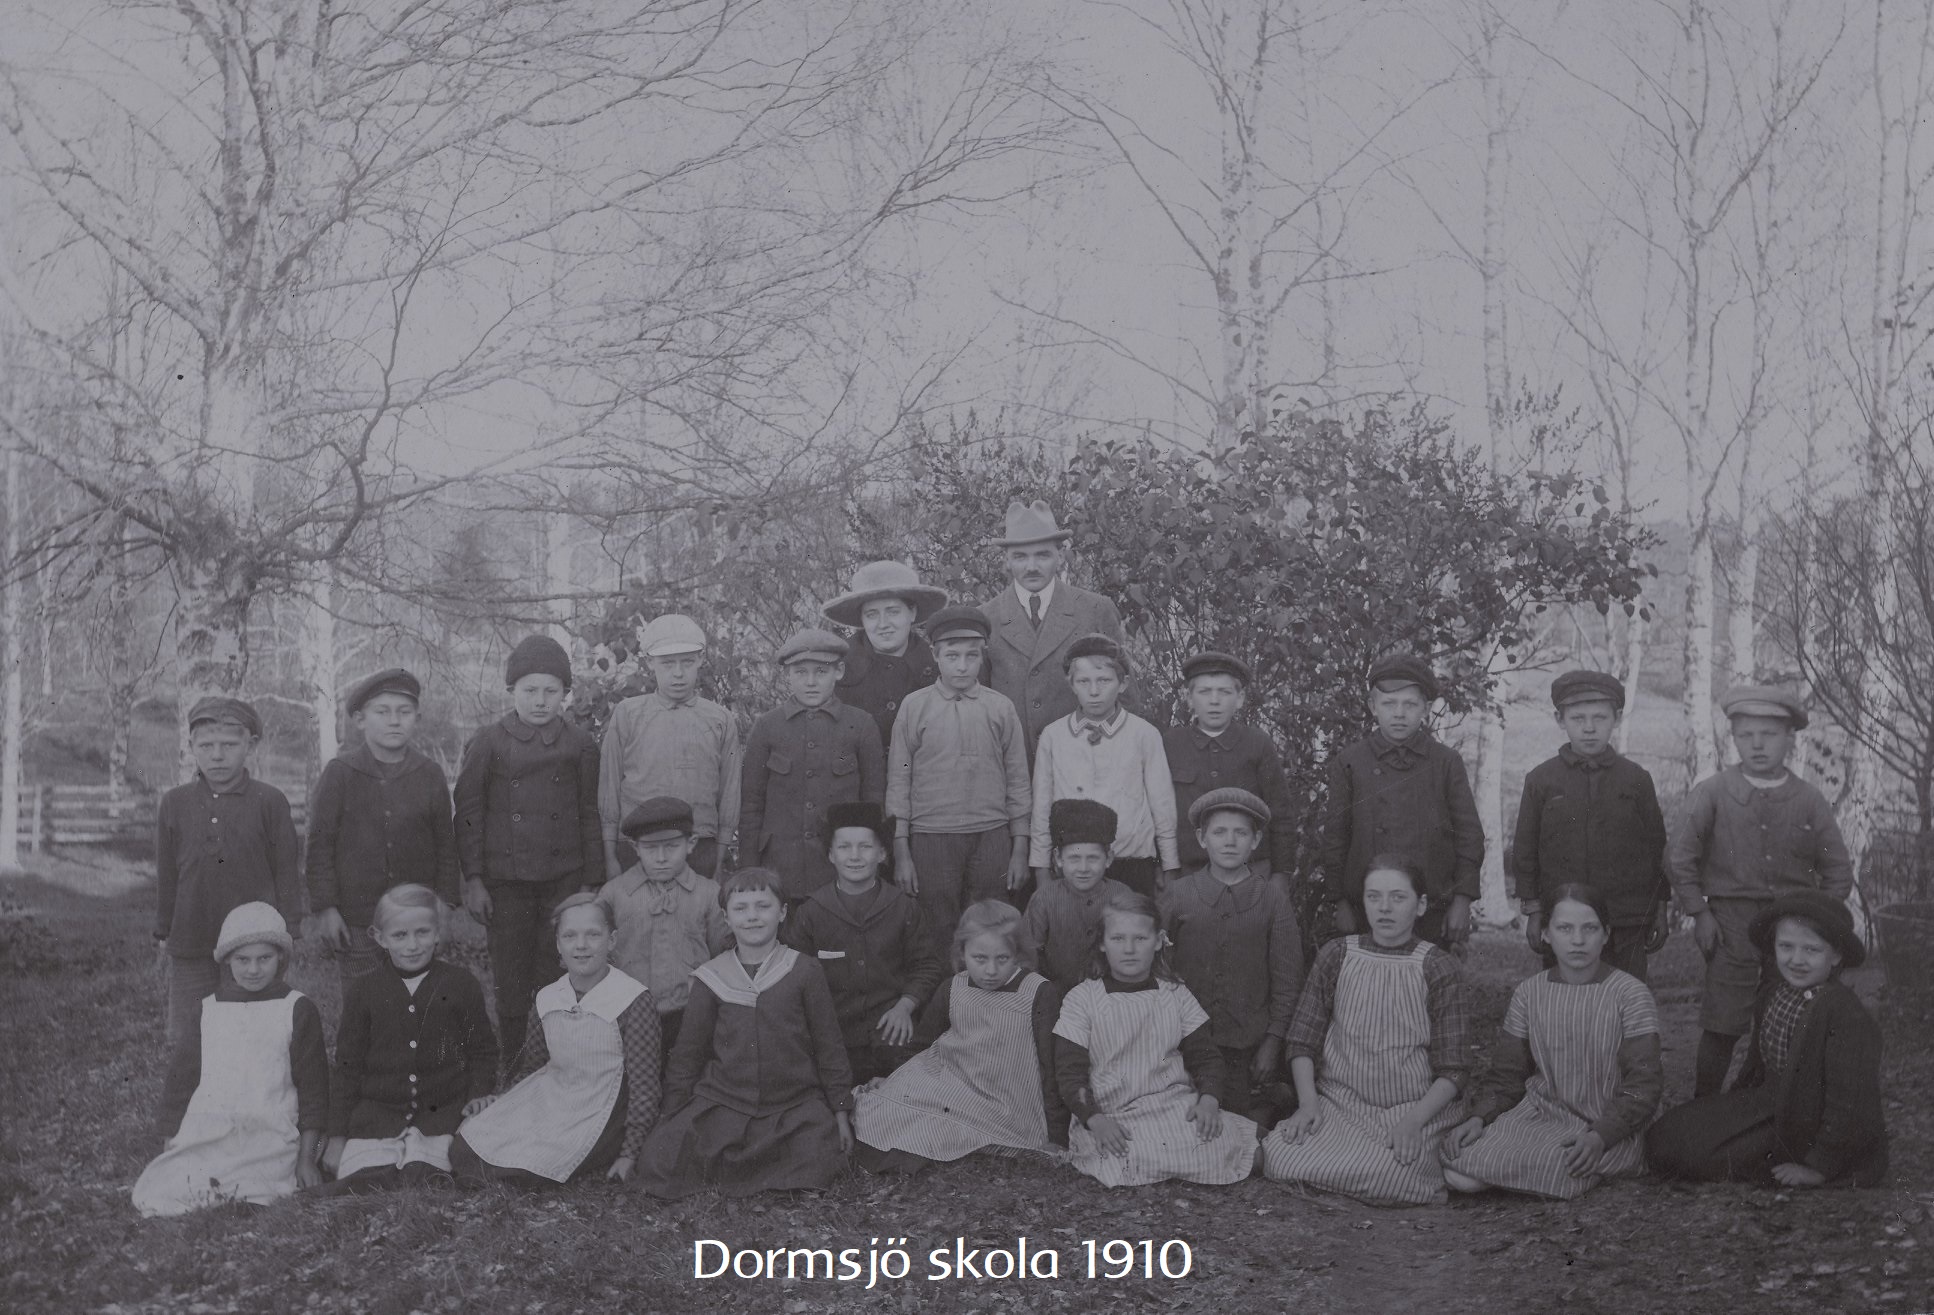 Dormsjöskola 1910